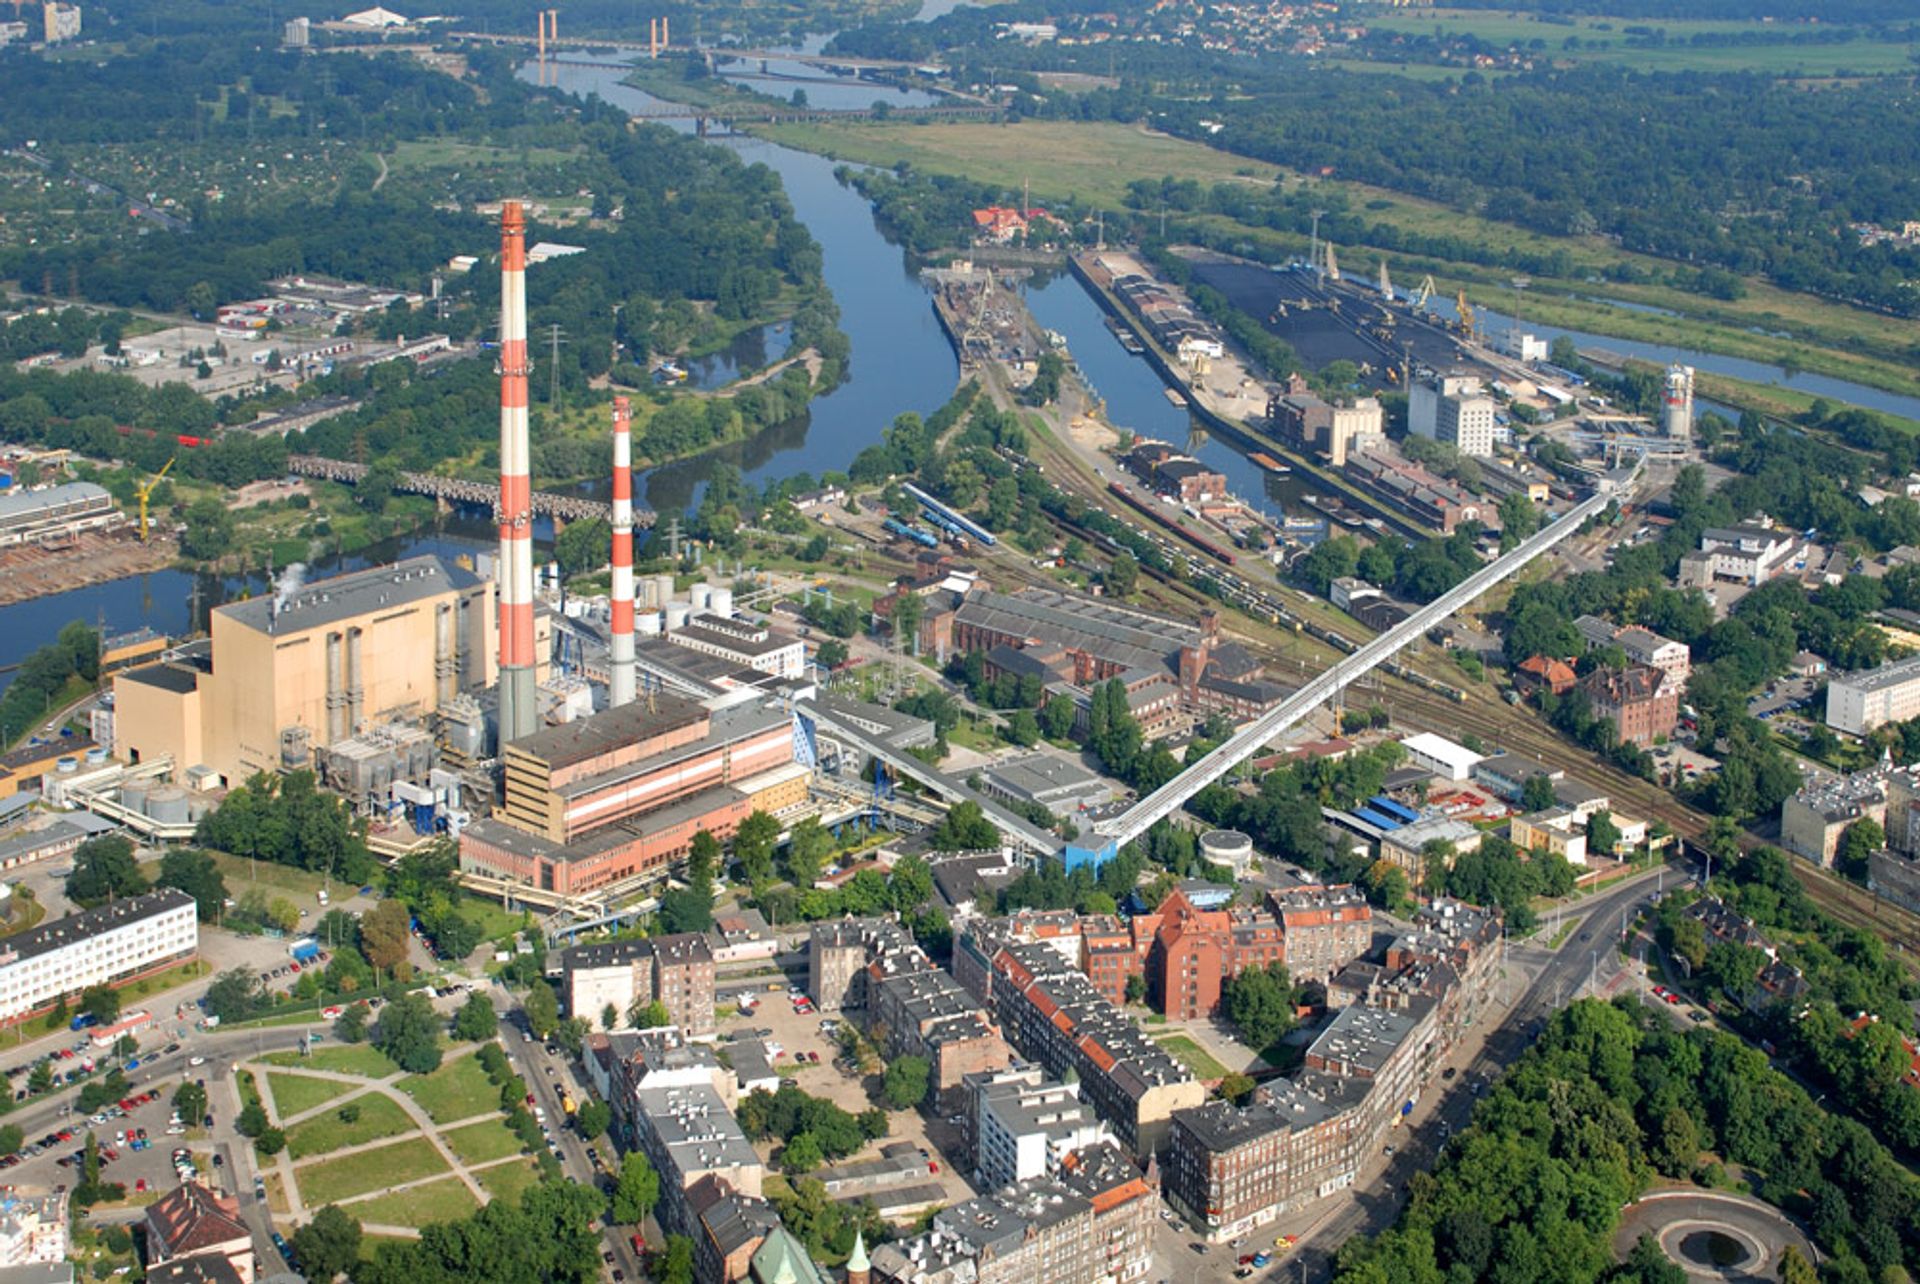 KOGENERACJA S.A. zwiększy produkcję zielonej energii  we wrocławskiej elektrociepłowni